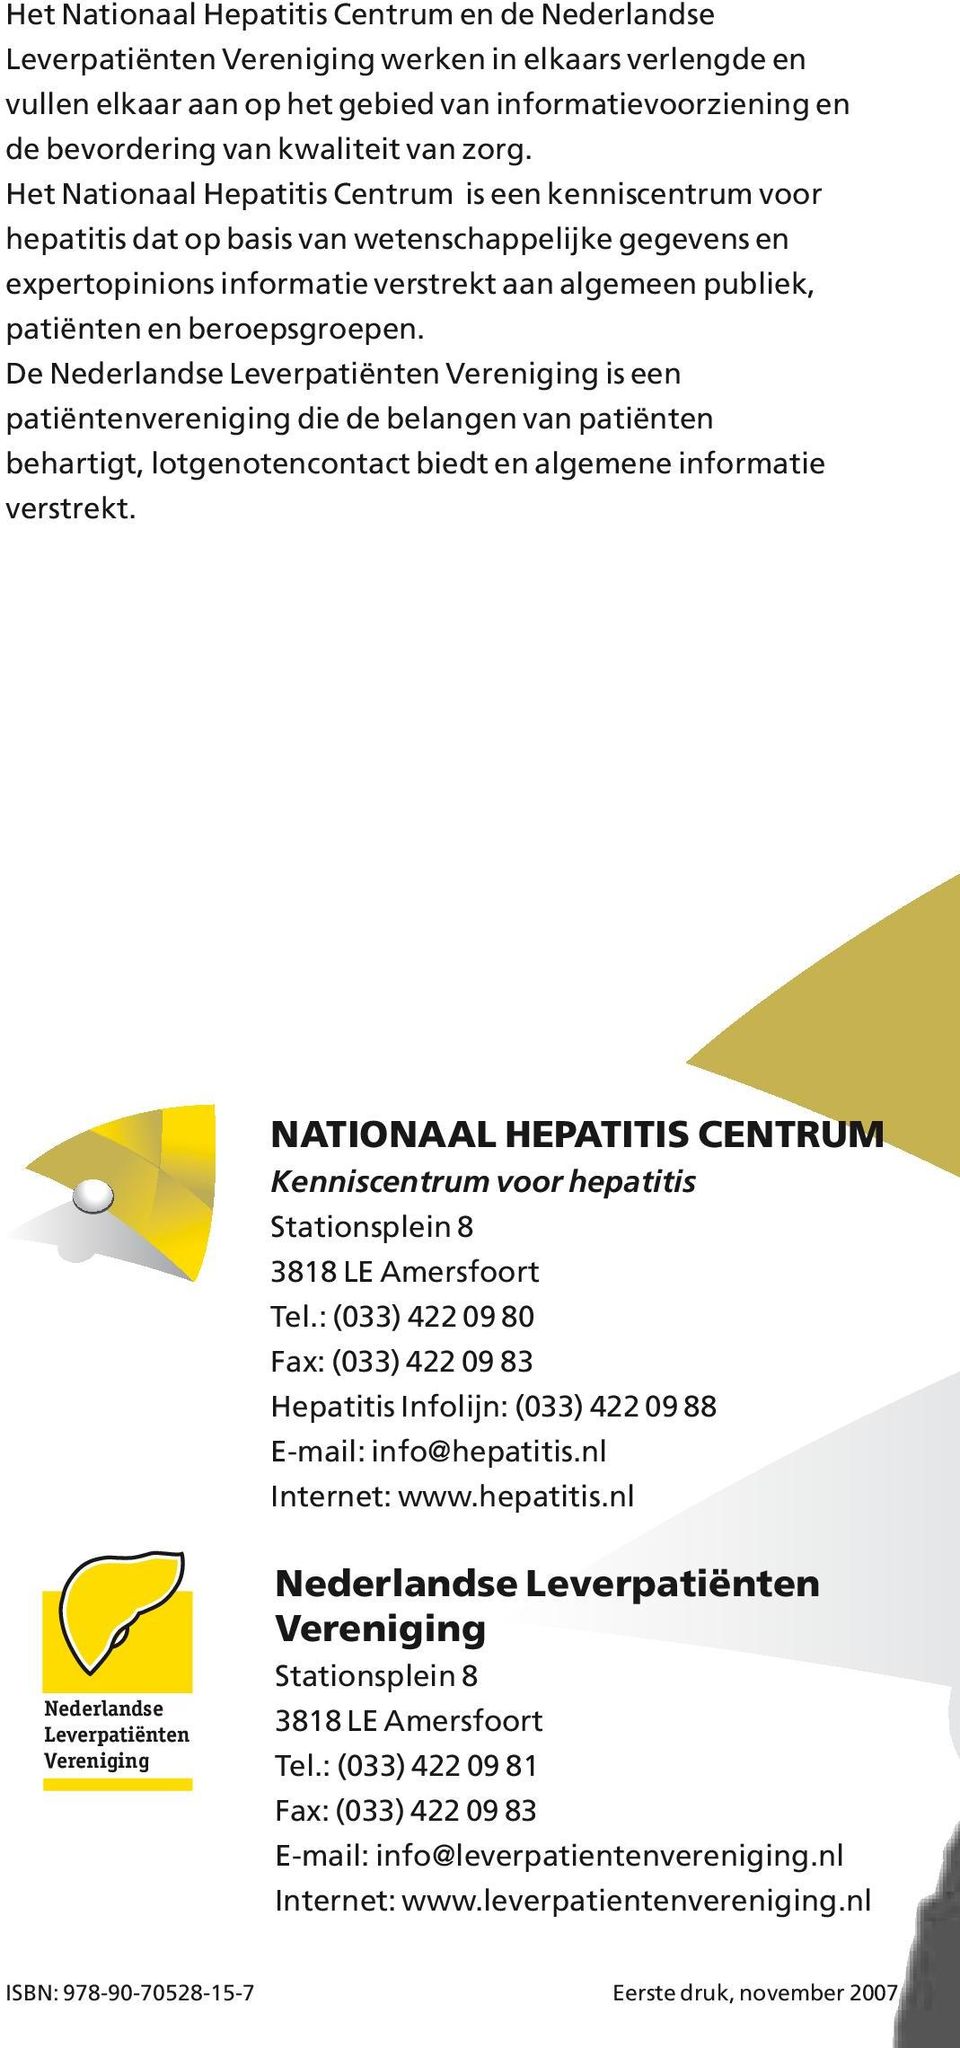 Het Nationaal Hepatitis Centrum is een kenniscentrum voor hepatitis dat op basis van wetenschappelijke gegevens en expertopinions informatie verstrekt aan algemeen publiek, patiënten en